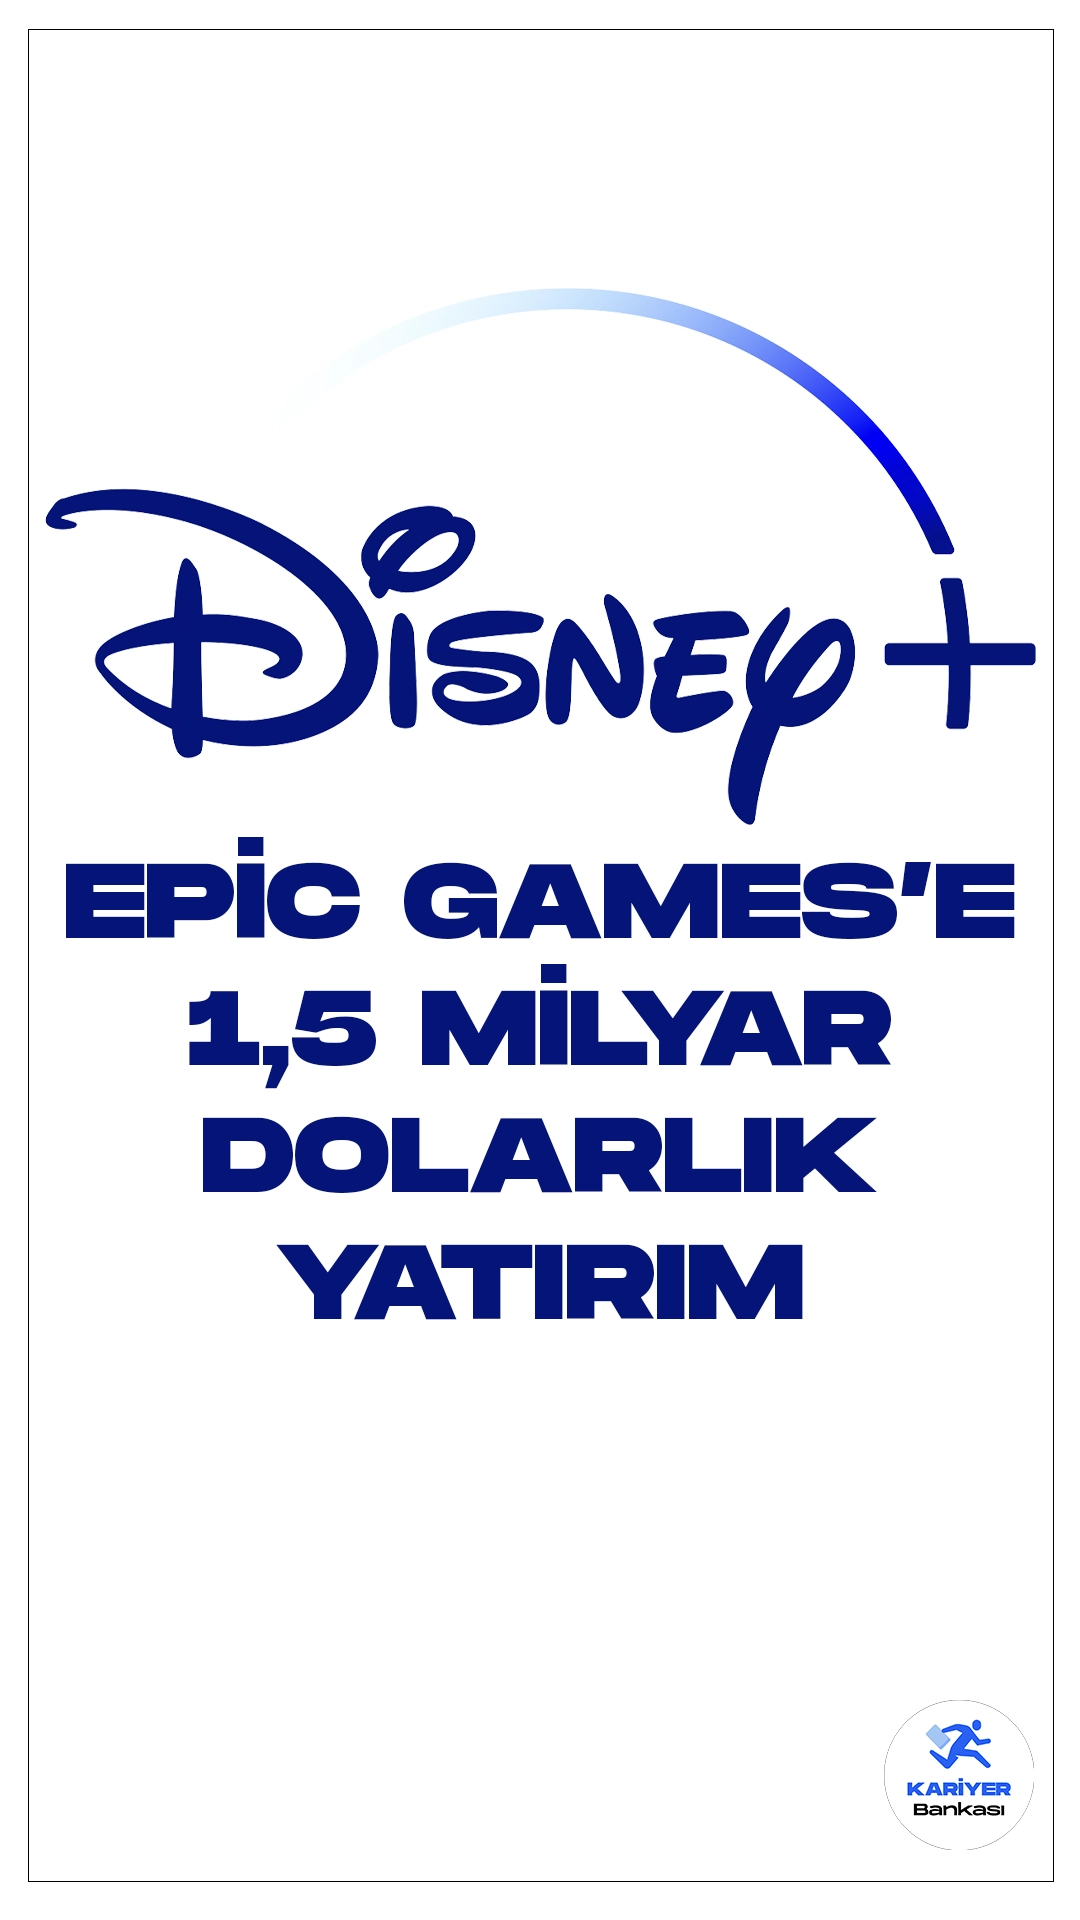 Disney'den Epic Games'e 1,5 Milyar Dolarlık Yatırım.Disney, dev eğlence şirketi, Epic Games'e devasa bir yatırım yapmayı planlıyor: 1,5 milyar dolarlık hisse satın alacaklarını duyurdu. Bu anlaşma, Disney'in oyun alanındaki varlığını güçlendirecek ve yeni bir oyun ve eğlence evreni yaratmak için Epic Games ile işbirliği yapacaklarını ifade ediyor.